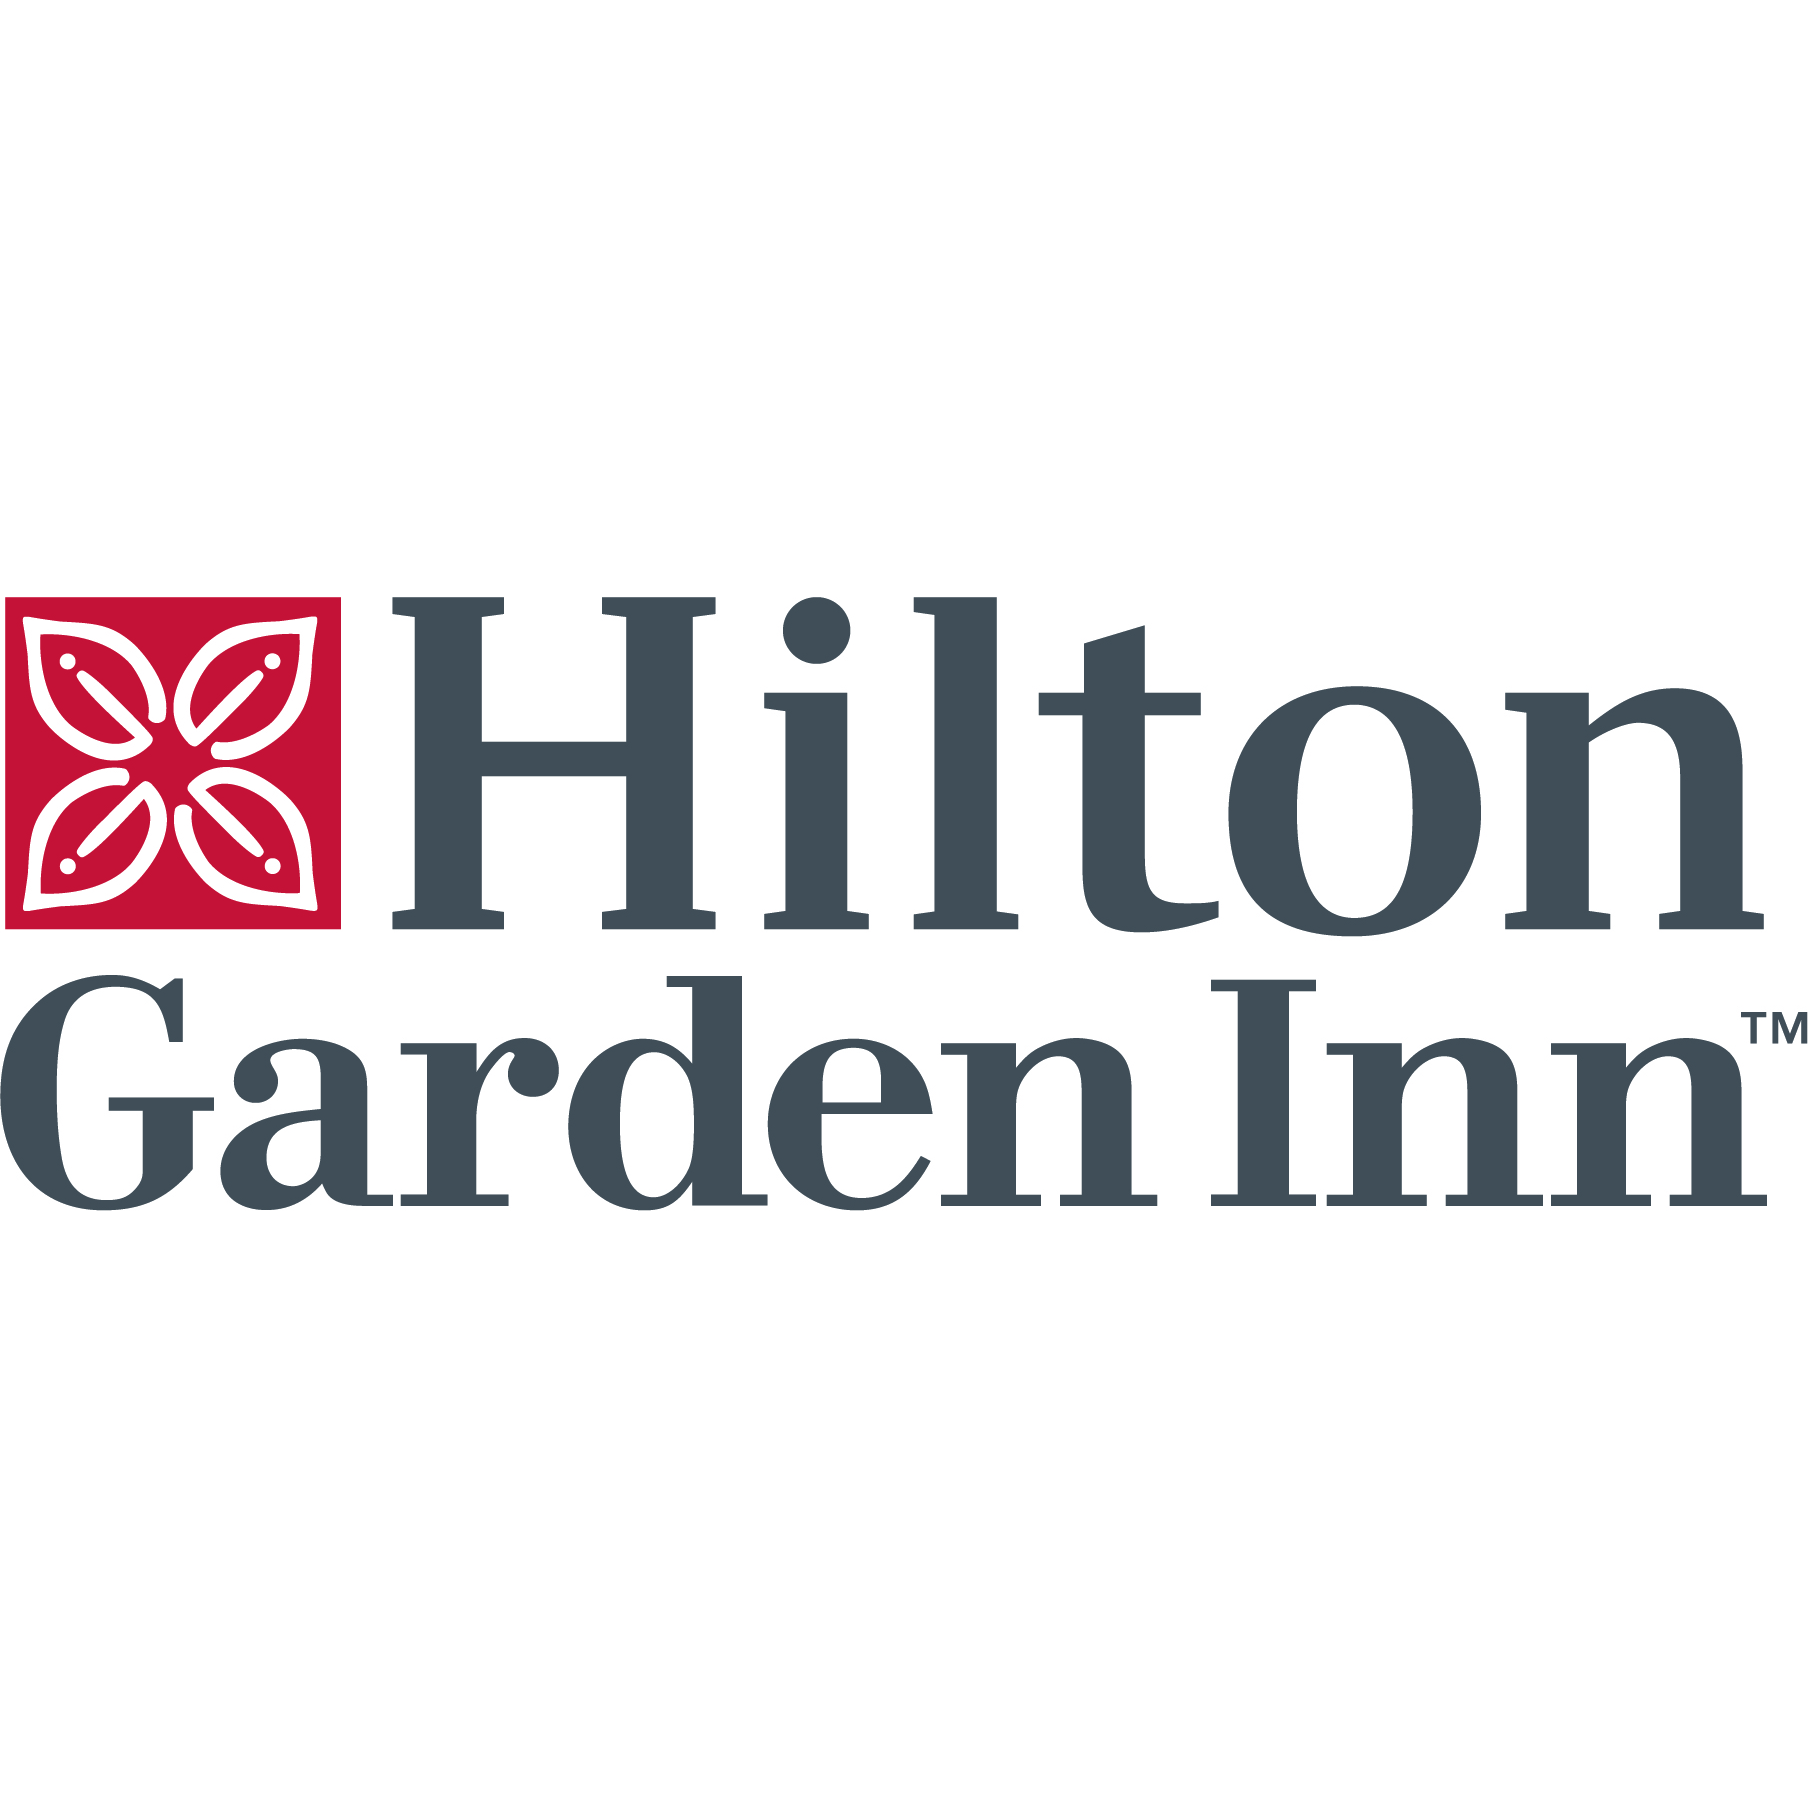 Hilton Garden Inn Sarasota-Bradenton Airport - Sarasota, FL 34243 - (941)552-1100 | ShowMeLocal.com